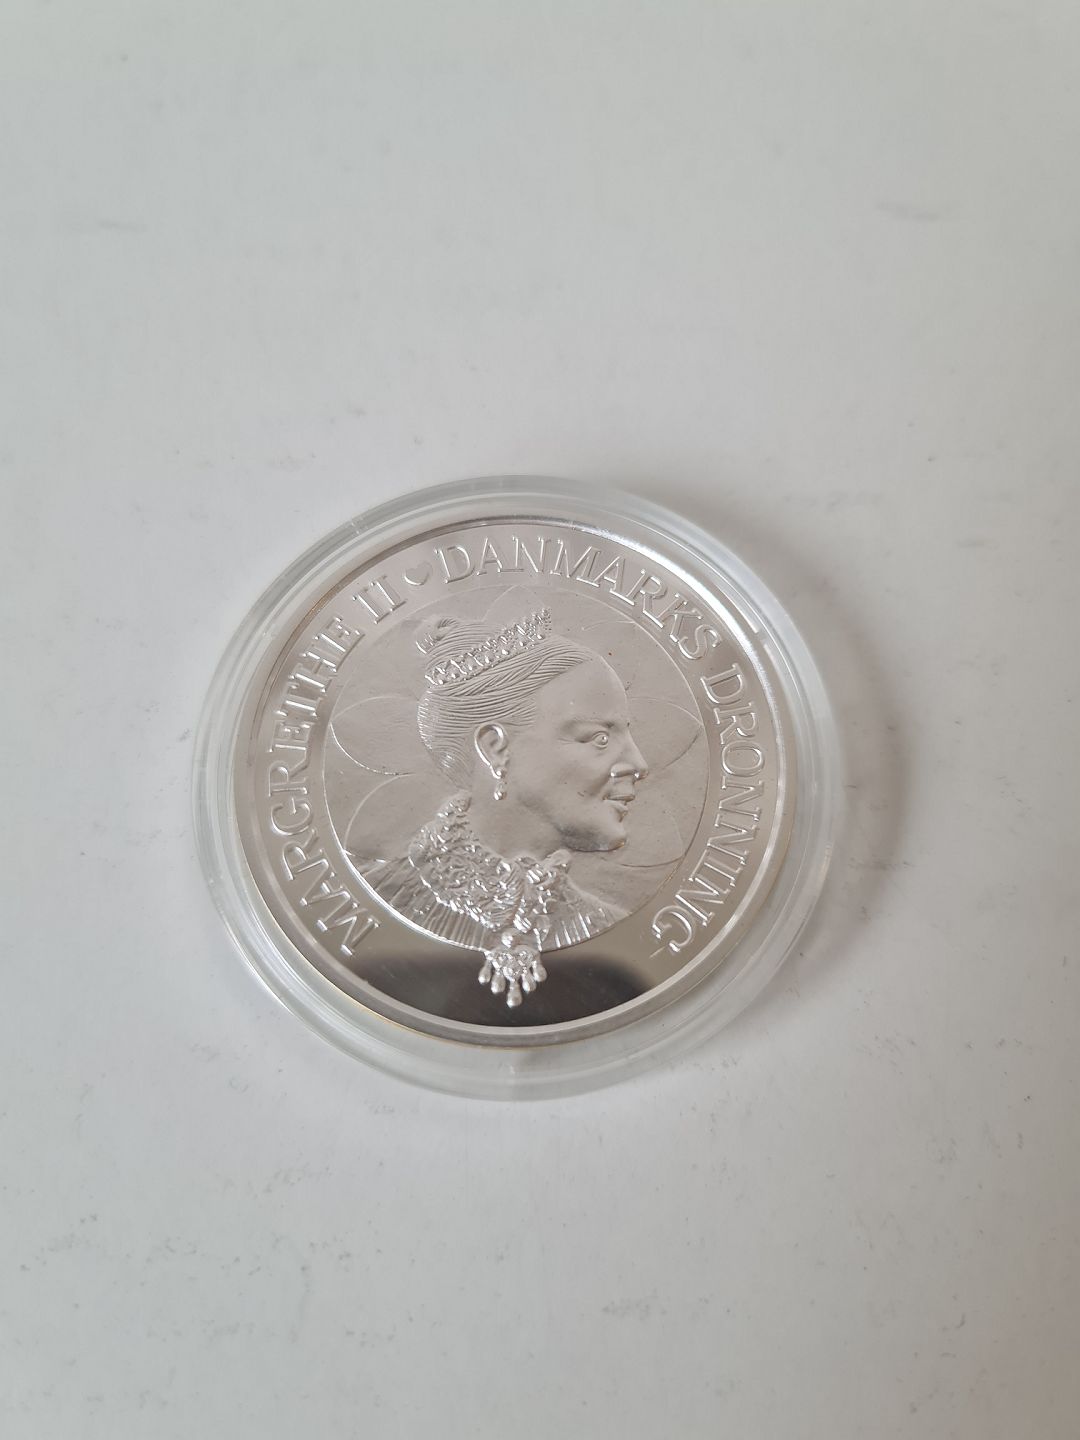 Vågn op udløser Overbevisende KAD ringen - Jubilæumsmønt i sølv. 200 kr. mønt i anledningen af Dronning  Margrethe II 60 års - Jubilæumsmønt i sølv. 200 kr. mønt i anledningen af  Dronning Margrethe II 60 års